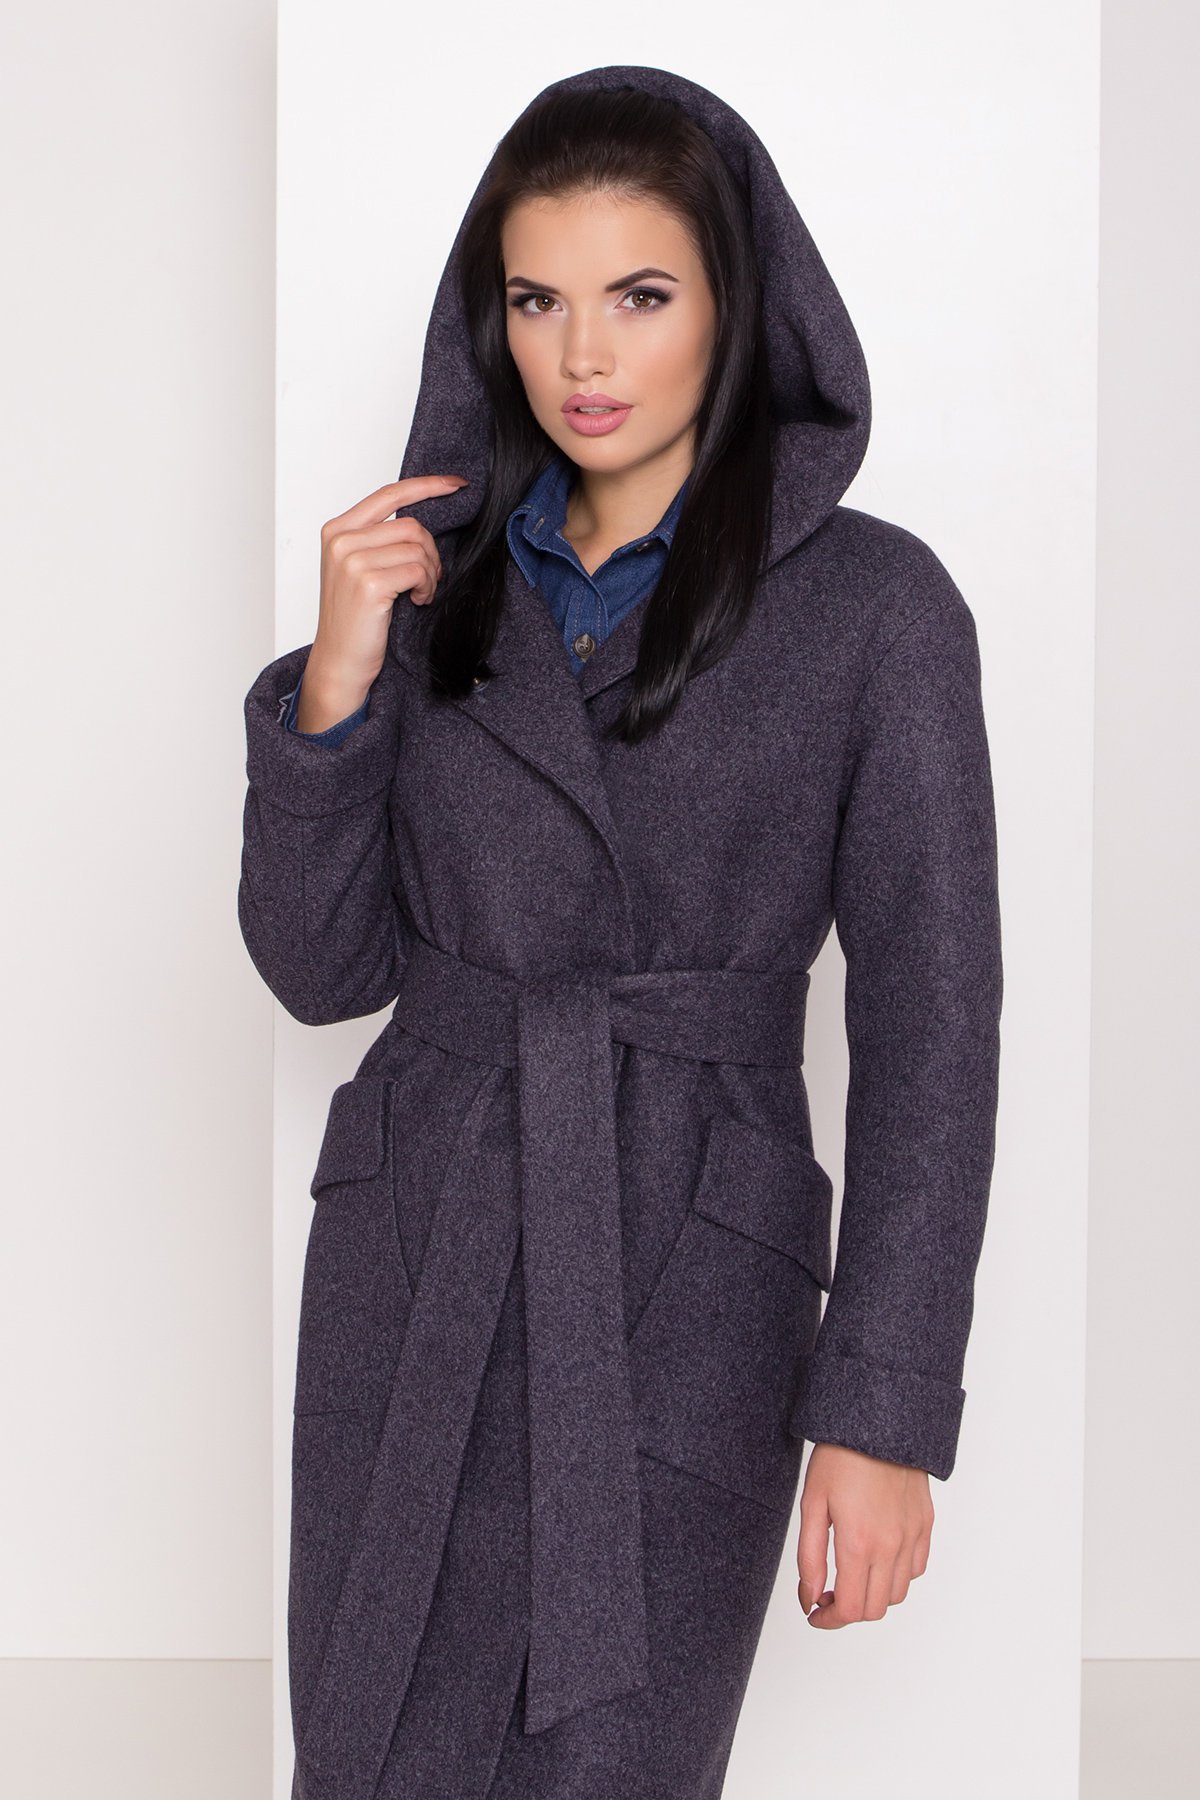 Женское пальто зима с накладными карманами Анджи 8301 АРТ. 44427 Цвет: т. синий 543 - фото 5, интернет магазин tm-modus.ru